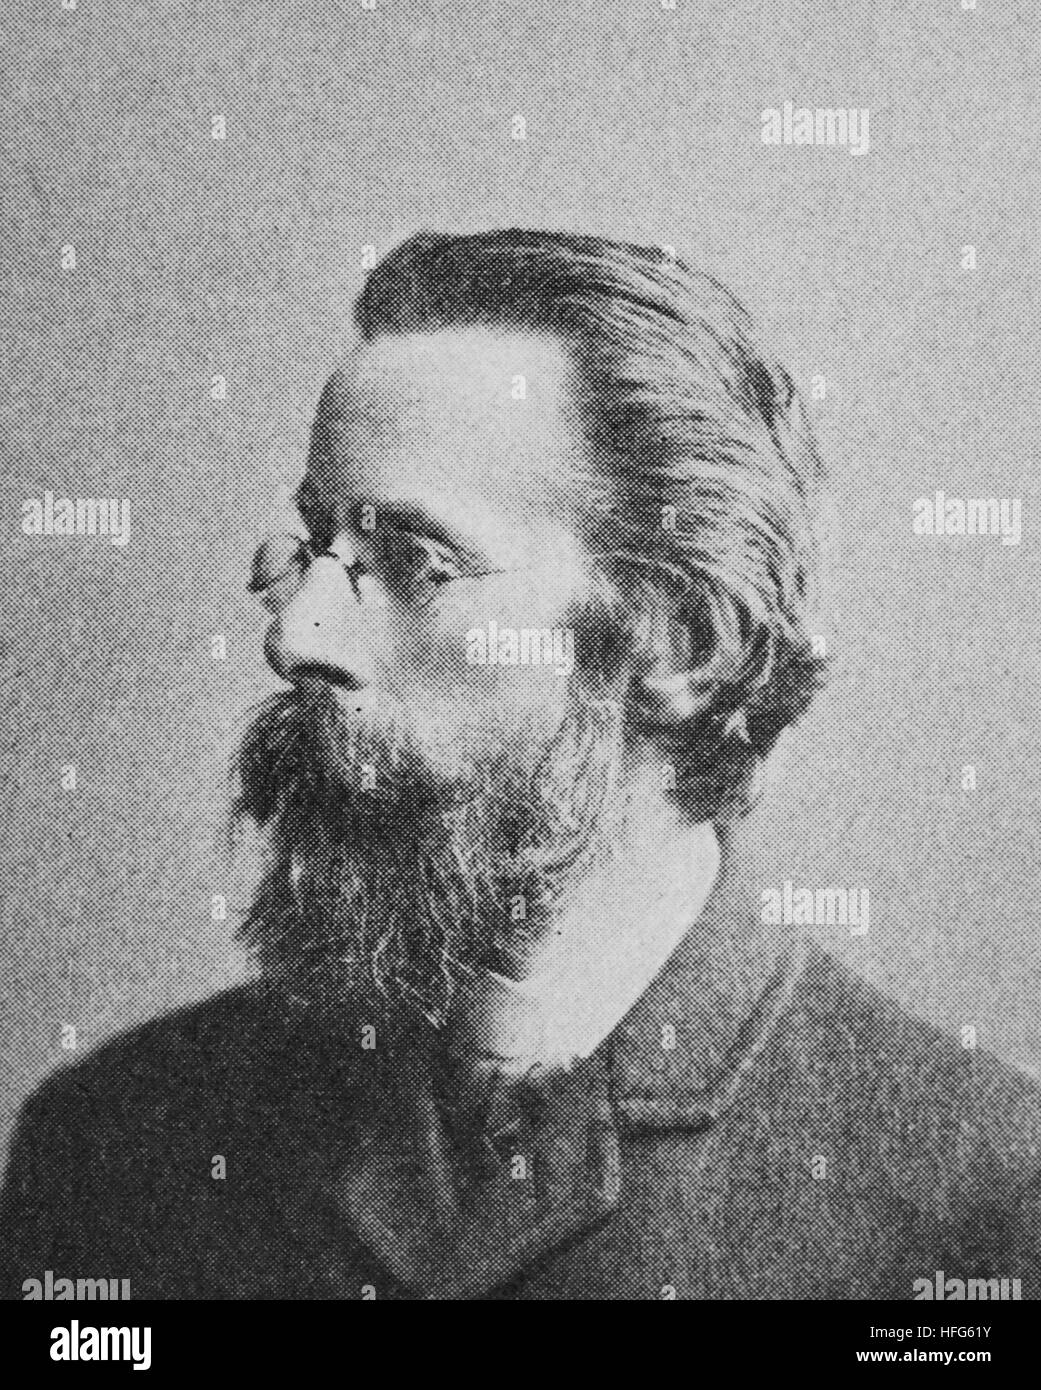 Heinrich Picot de Peccaduc, Freiherr von Herzogenberg, 1843-1900, war ein österreichischer Komponist und Dirigent stammte aus einer französischen Adelsfamilie, Reproduktion Foto aus dem Jahr 1895, Digital verbessert Stockfoto